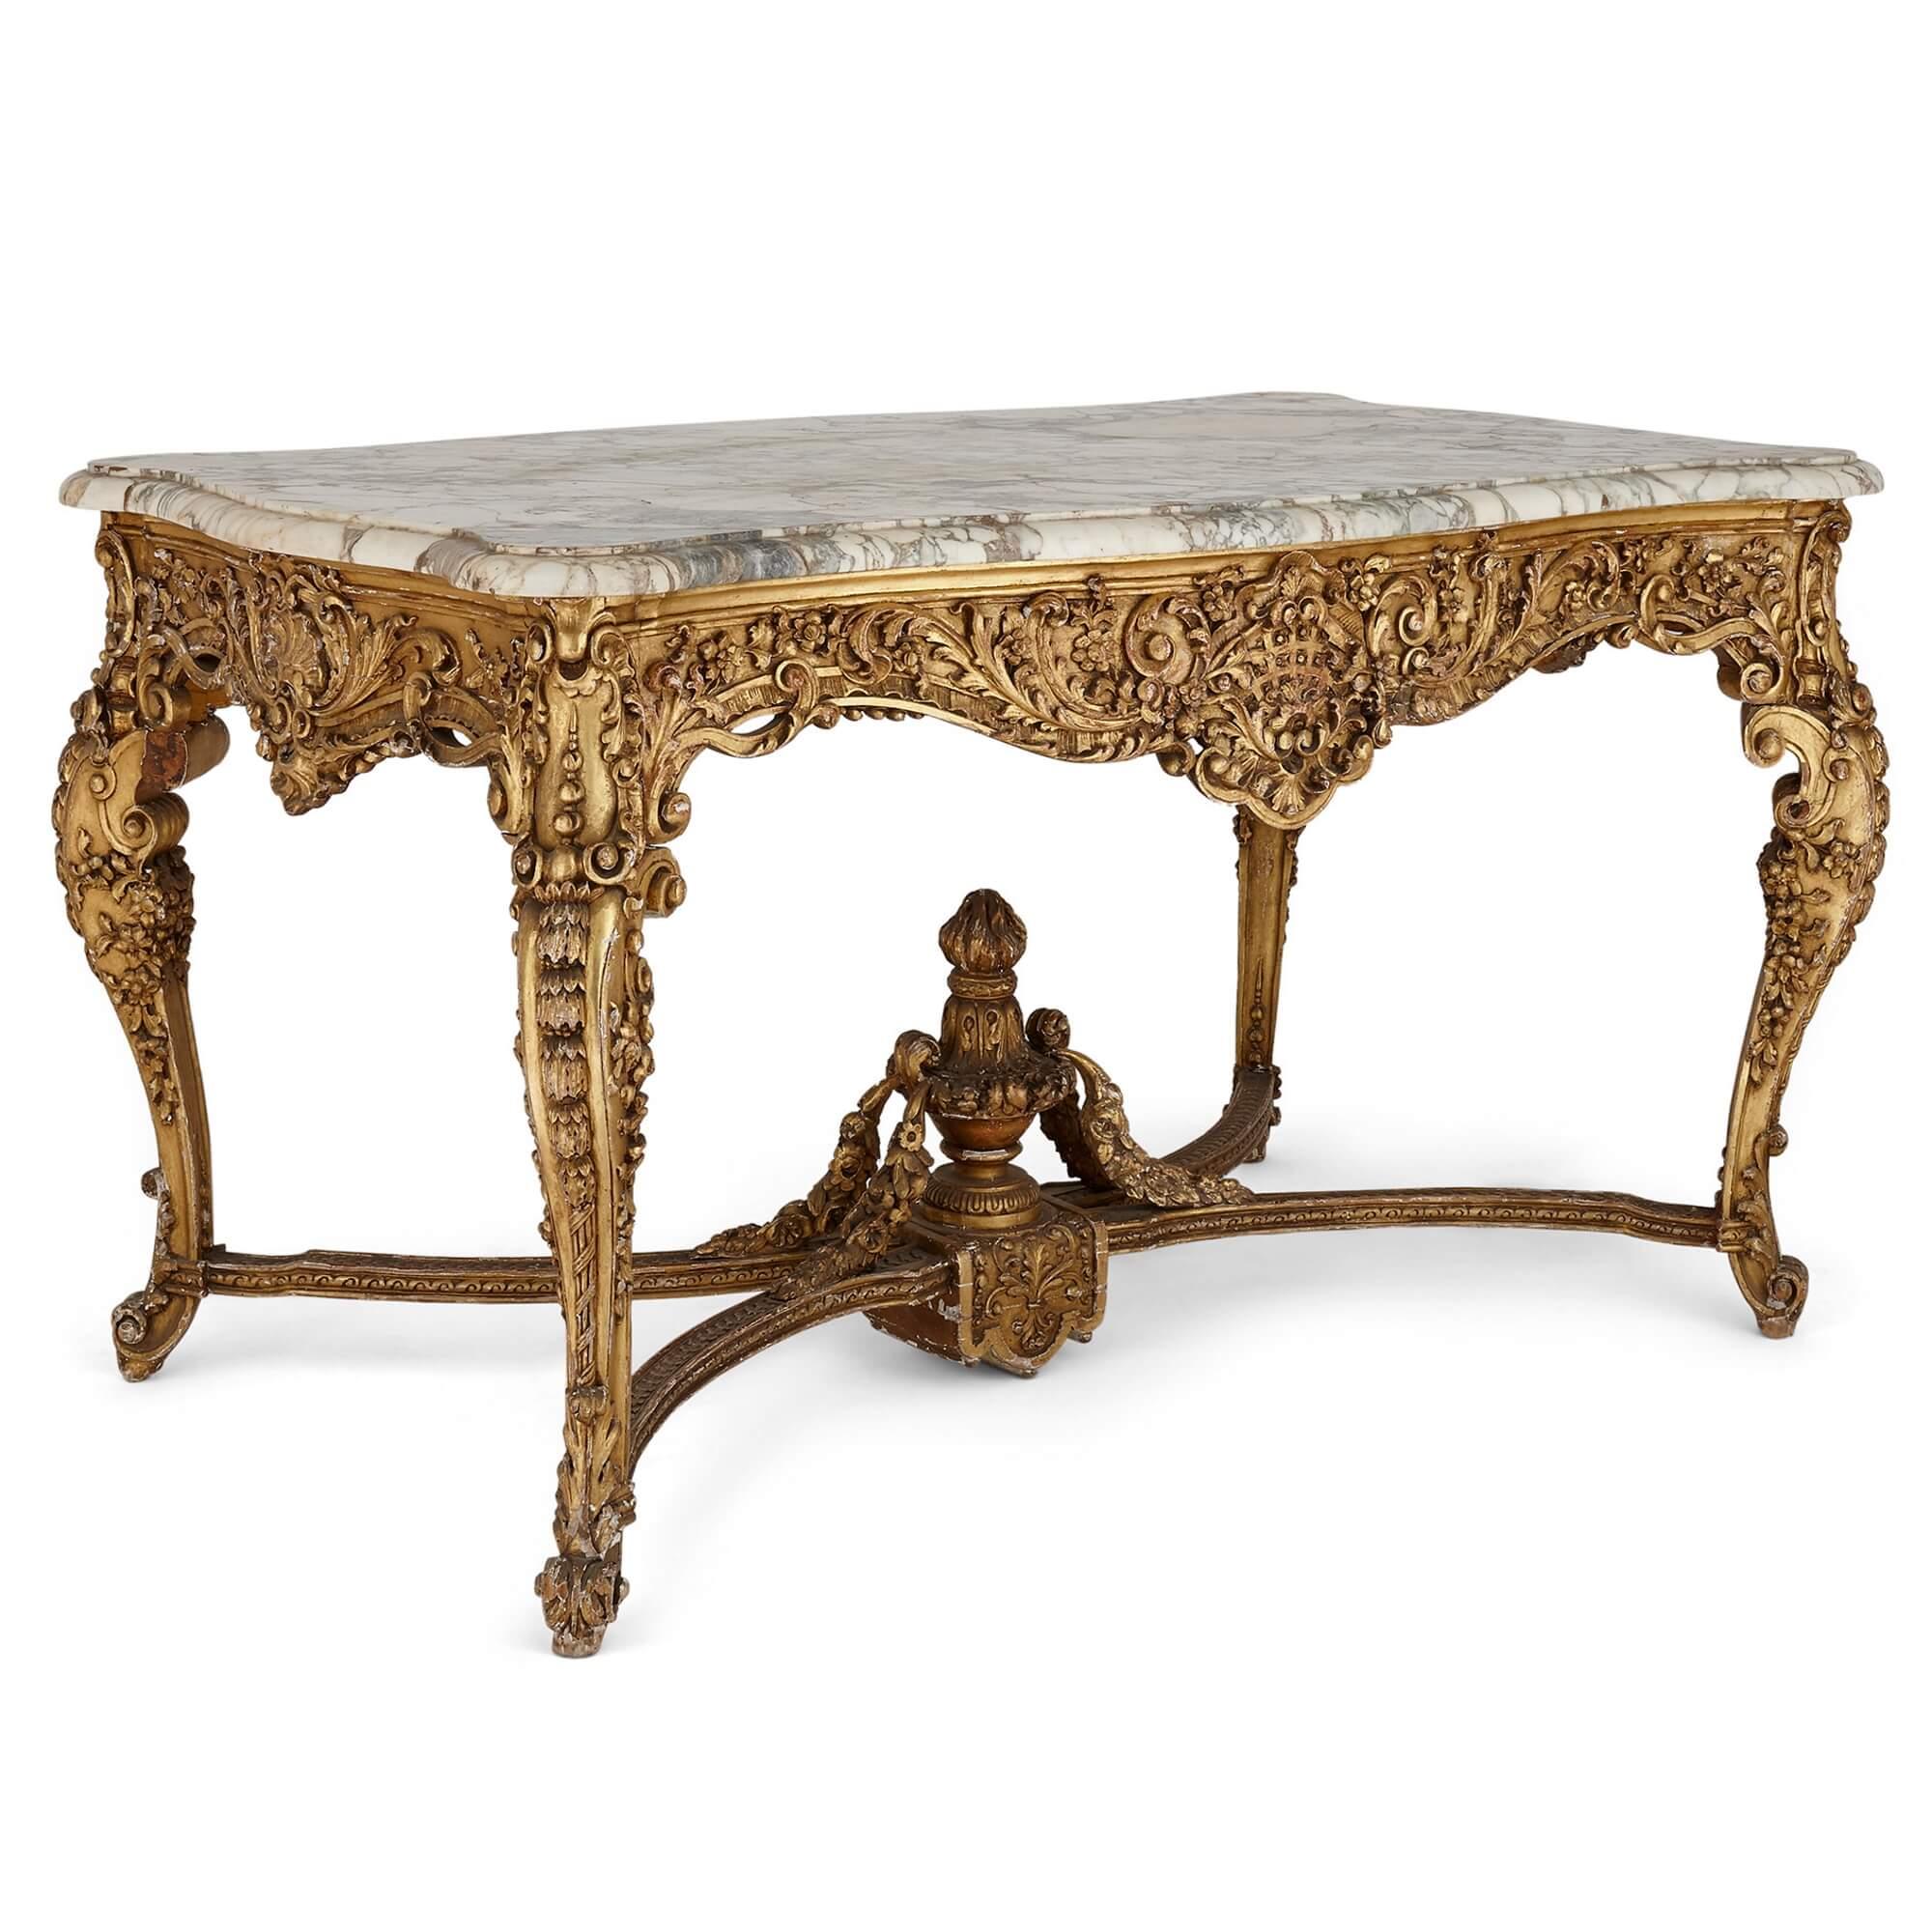 Dieser prächtige Mitteltisch zeigt alles, was den opulenten Stil der Regence-Möbelherstellung ausmacht: seine kunstvoll geschnitzten Barockmuster, seine Muscheln, seine geäderte weiße Marmorplatte. Der Tisch hat eine rechteckige Form und steht auf